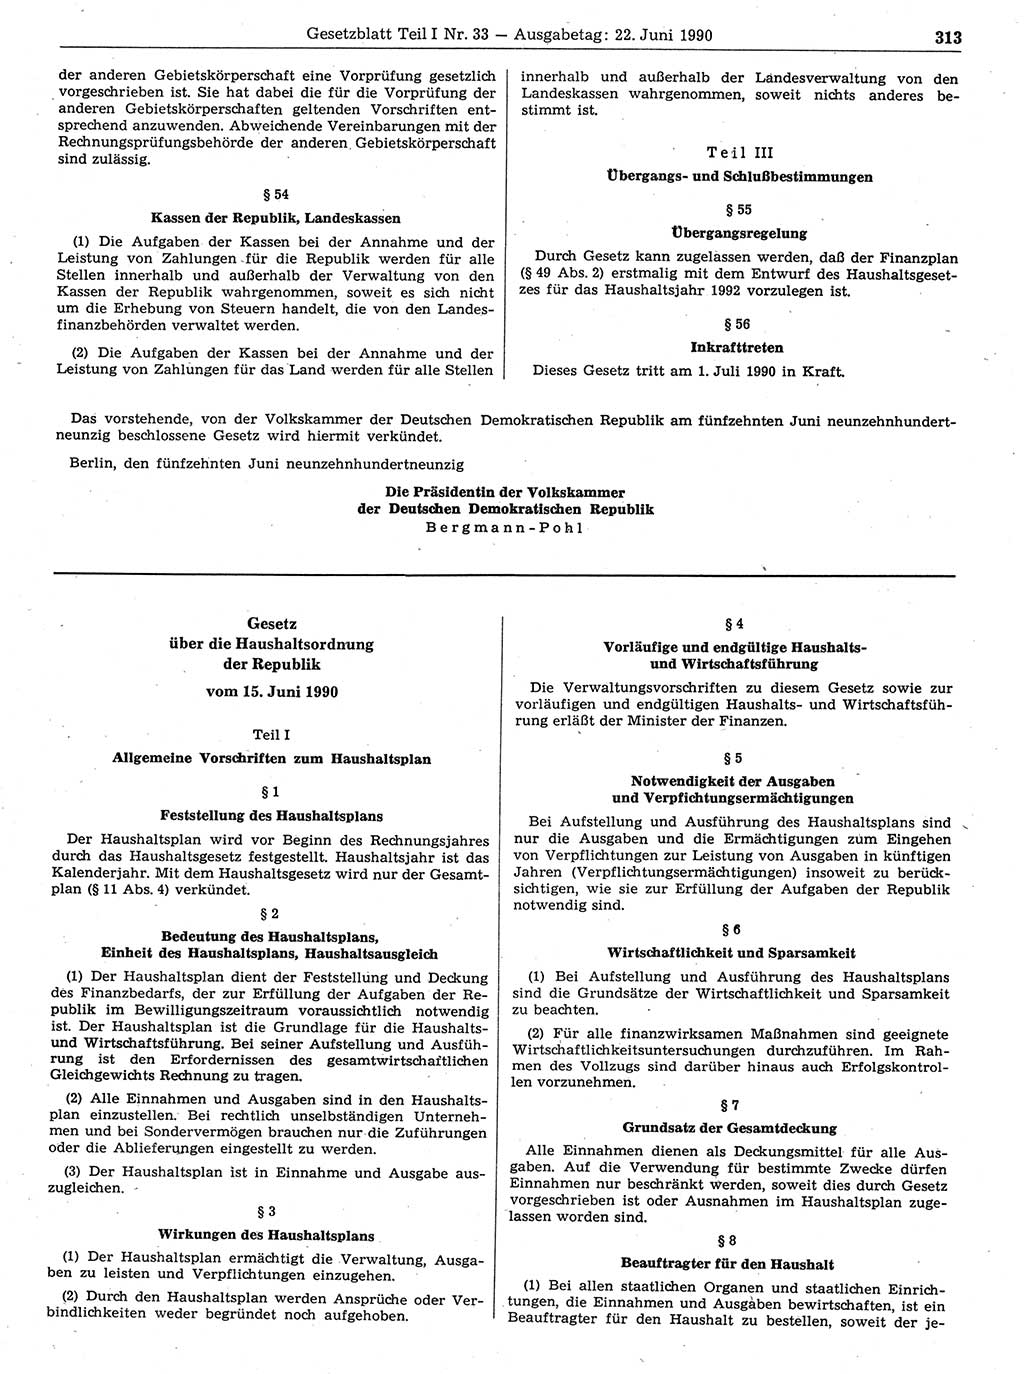 Gesetzblatt (GBl.) der Deutschen Demokratischen Republik (DDR) Teil Ⅰ 1990, Seite 313 (GBl. DDR Ⅰ 1990, S. 313)